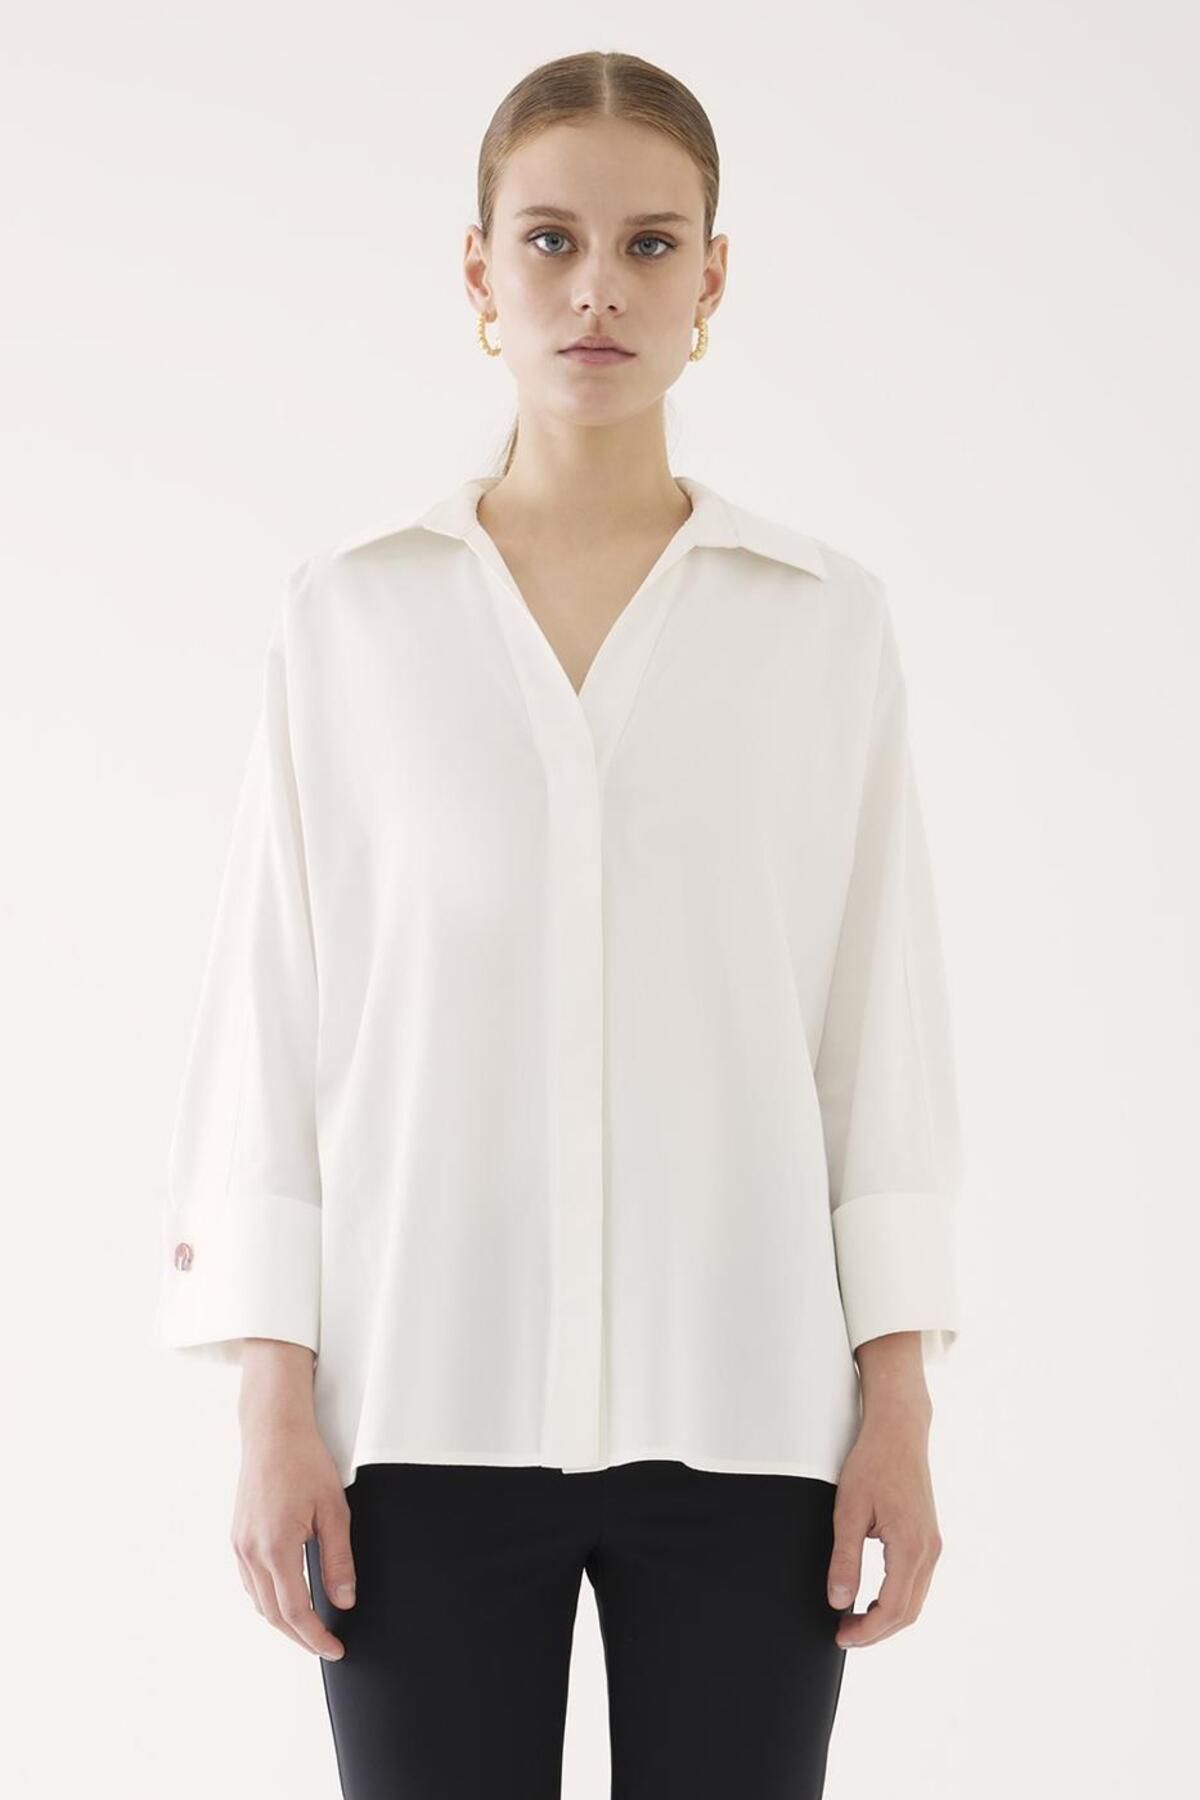 Perspective Alvin Rahat Kalıp Standart Boy Düşük Kollu Gömlek Yaka Beyaz Renk Kadın Gömlek